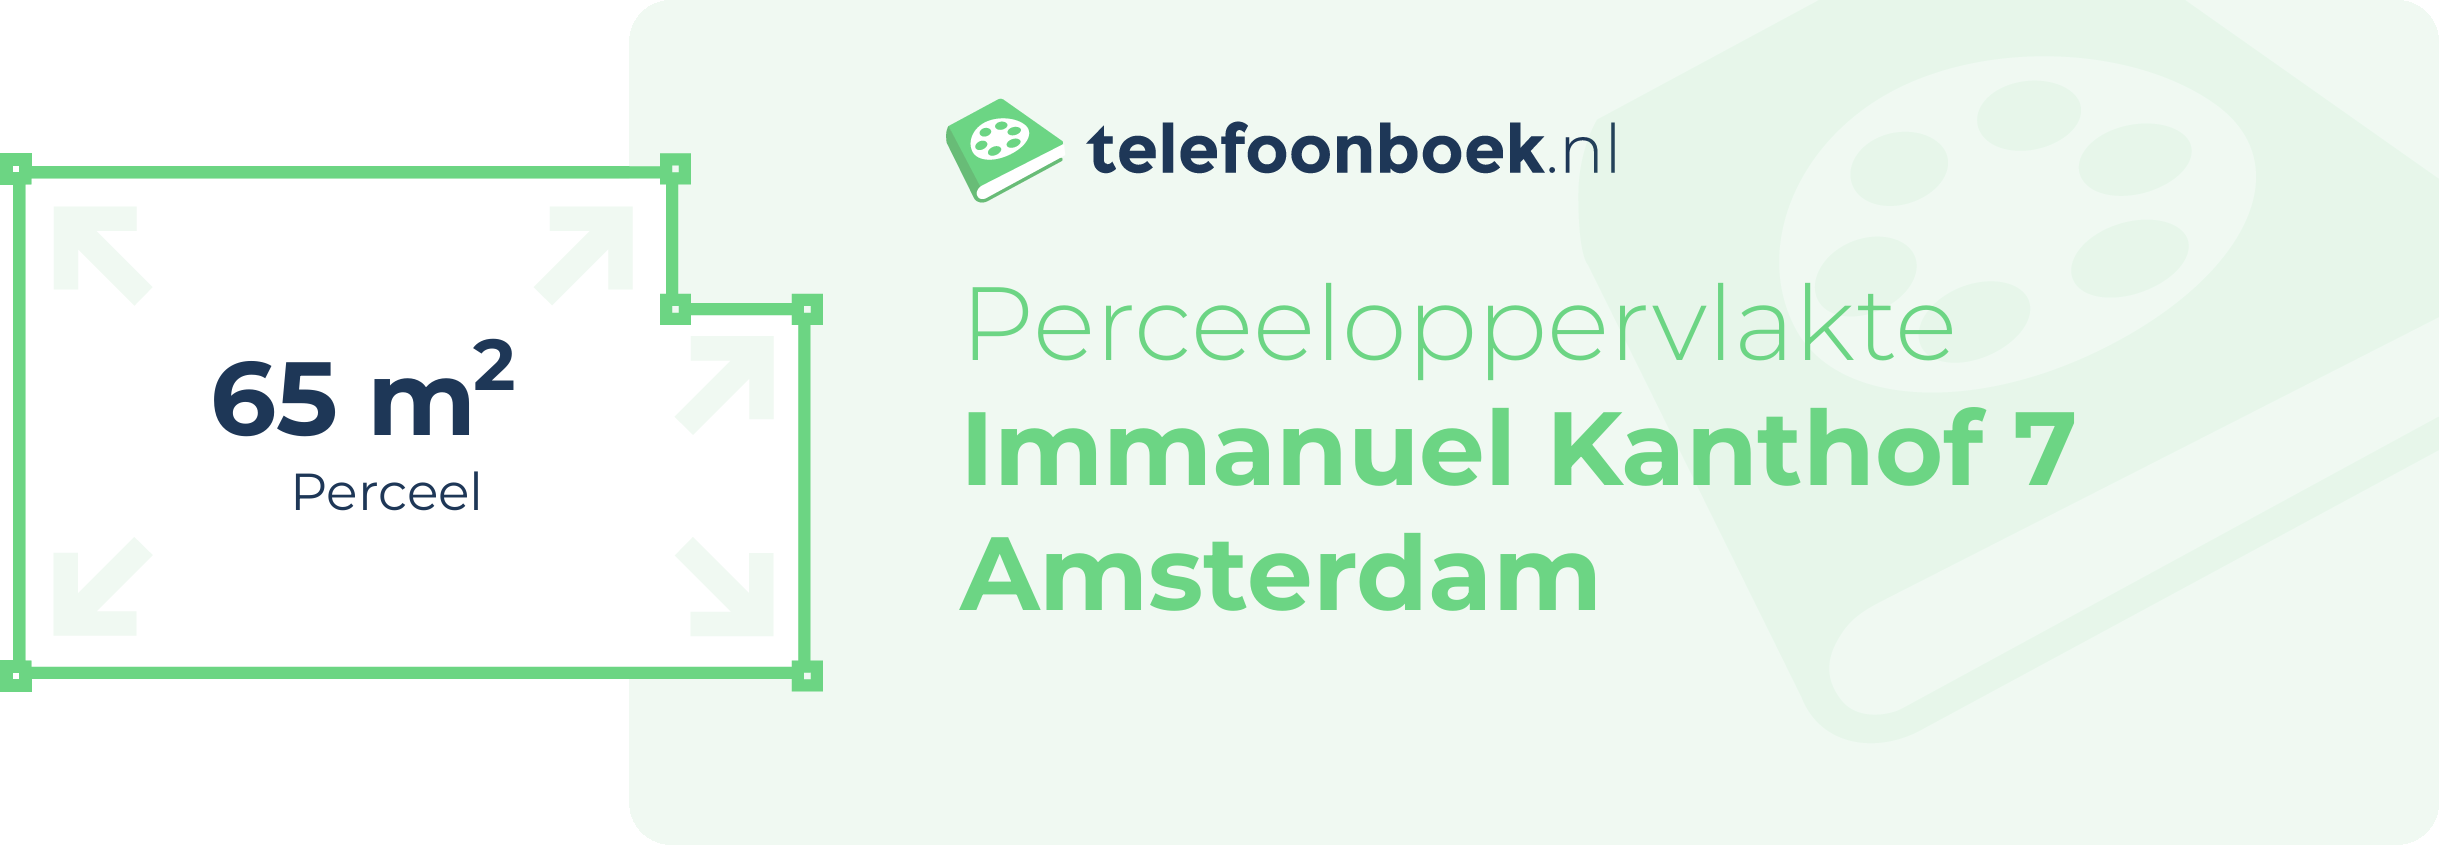 Perceeloppervlakte Immanuel Kanthof 7 Amsterdam